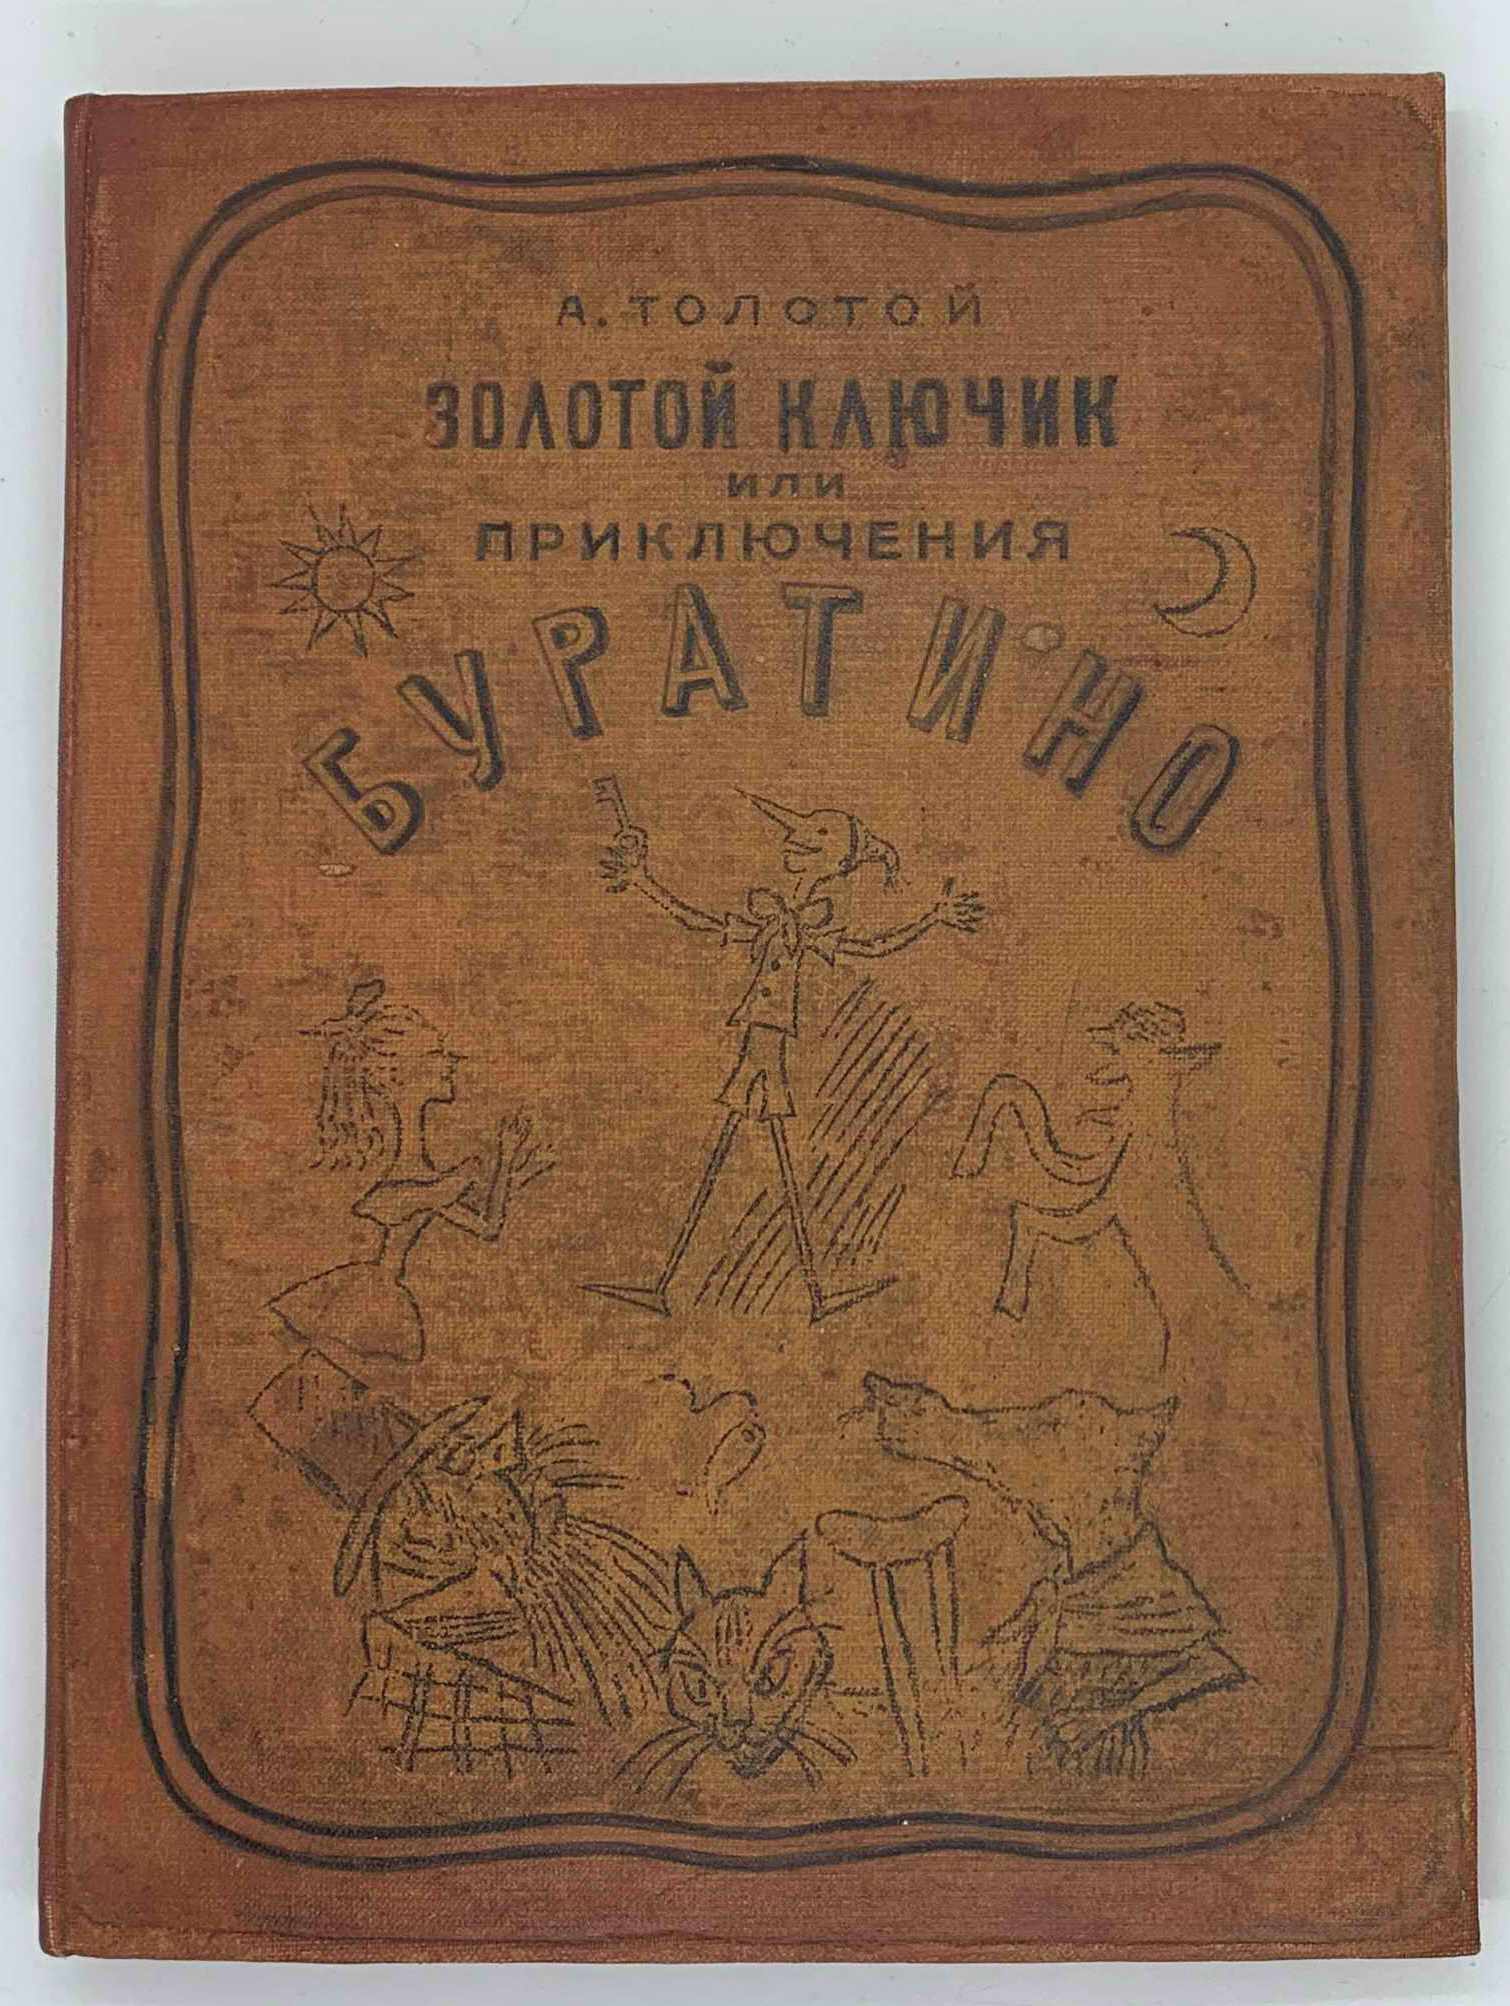 Tolstoj A., Zolotoj klyuchik ili priklyucheniya Buratino. / The Golden Key or the Adventures of Buratino., 1936, Leningrad, in Russian - landofmagazines.com